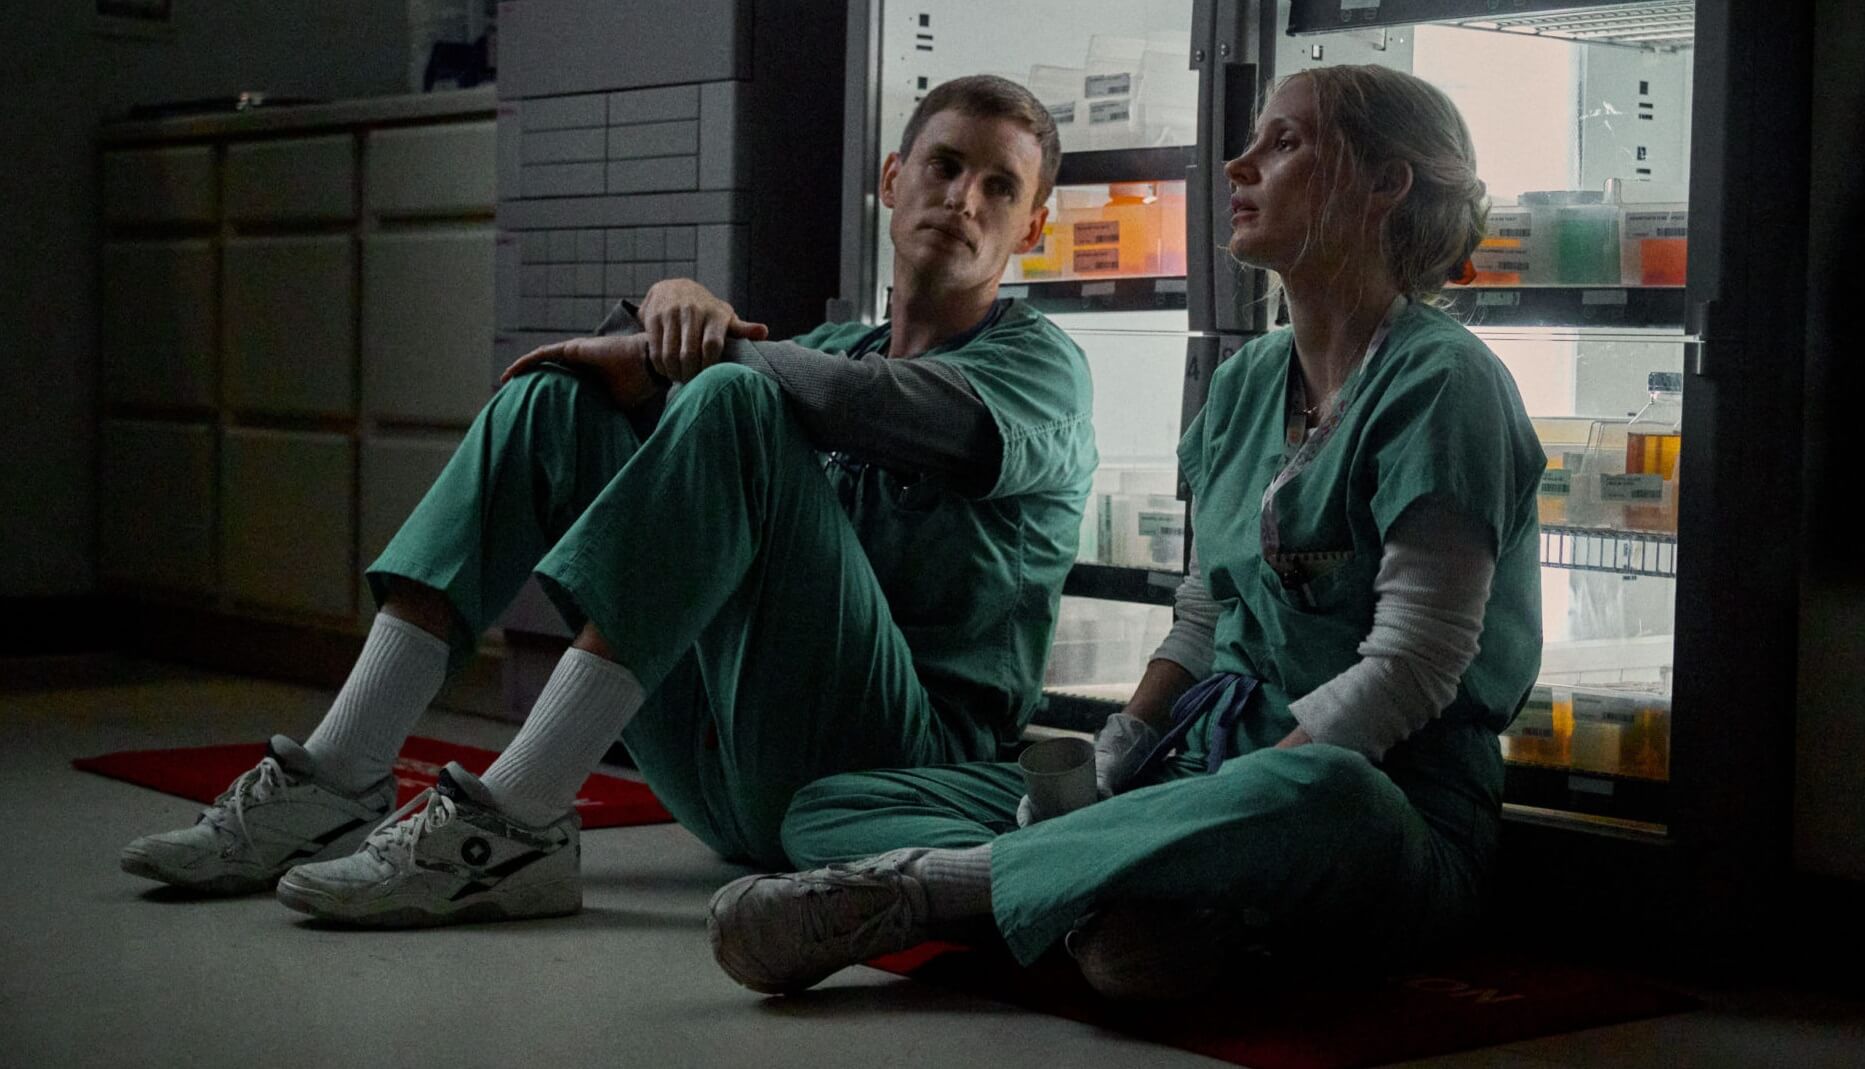 Είδαμε το “The Good Nurse” στο Netflix – Γιατί τρομάξαμε παρ’ όλο που δεν είχε ούτε μία τρομακτική σκηνή